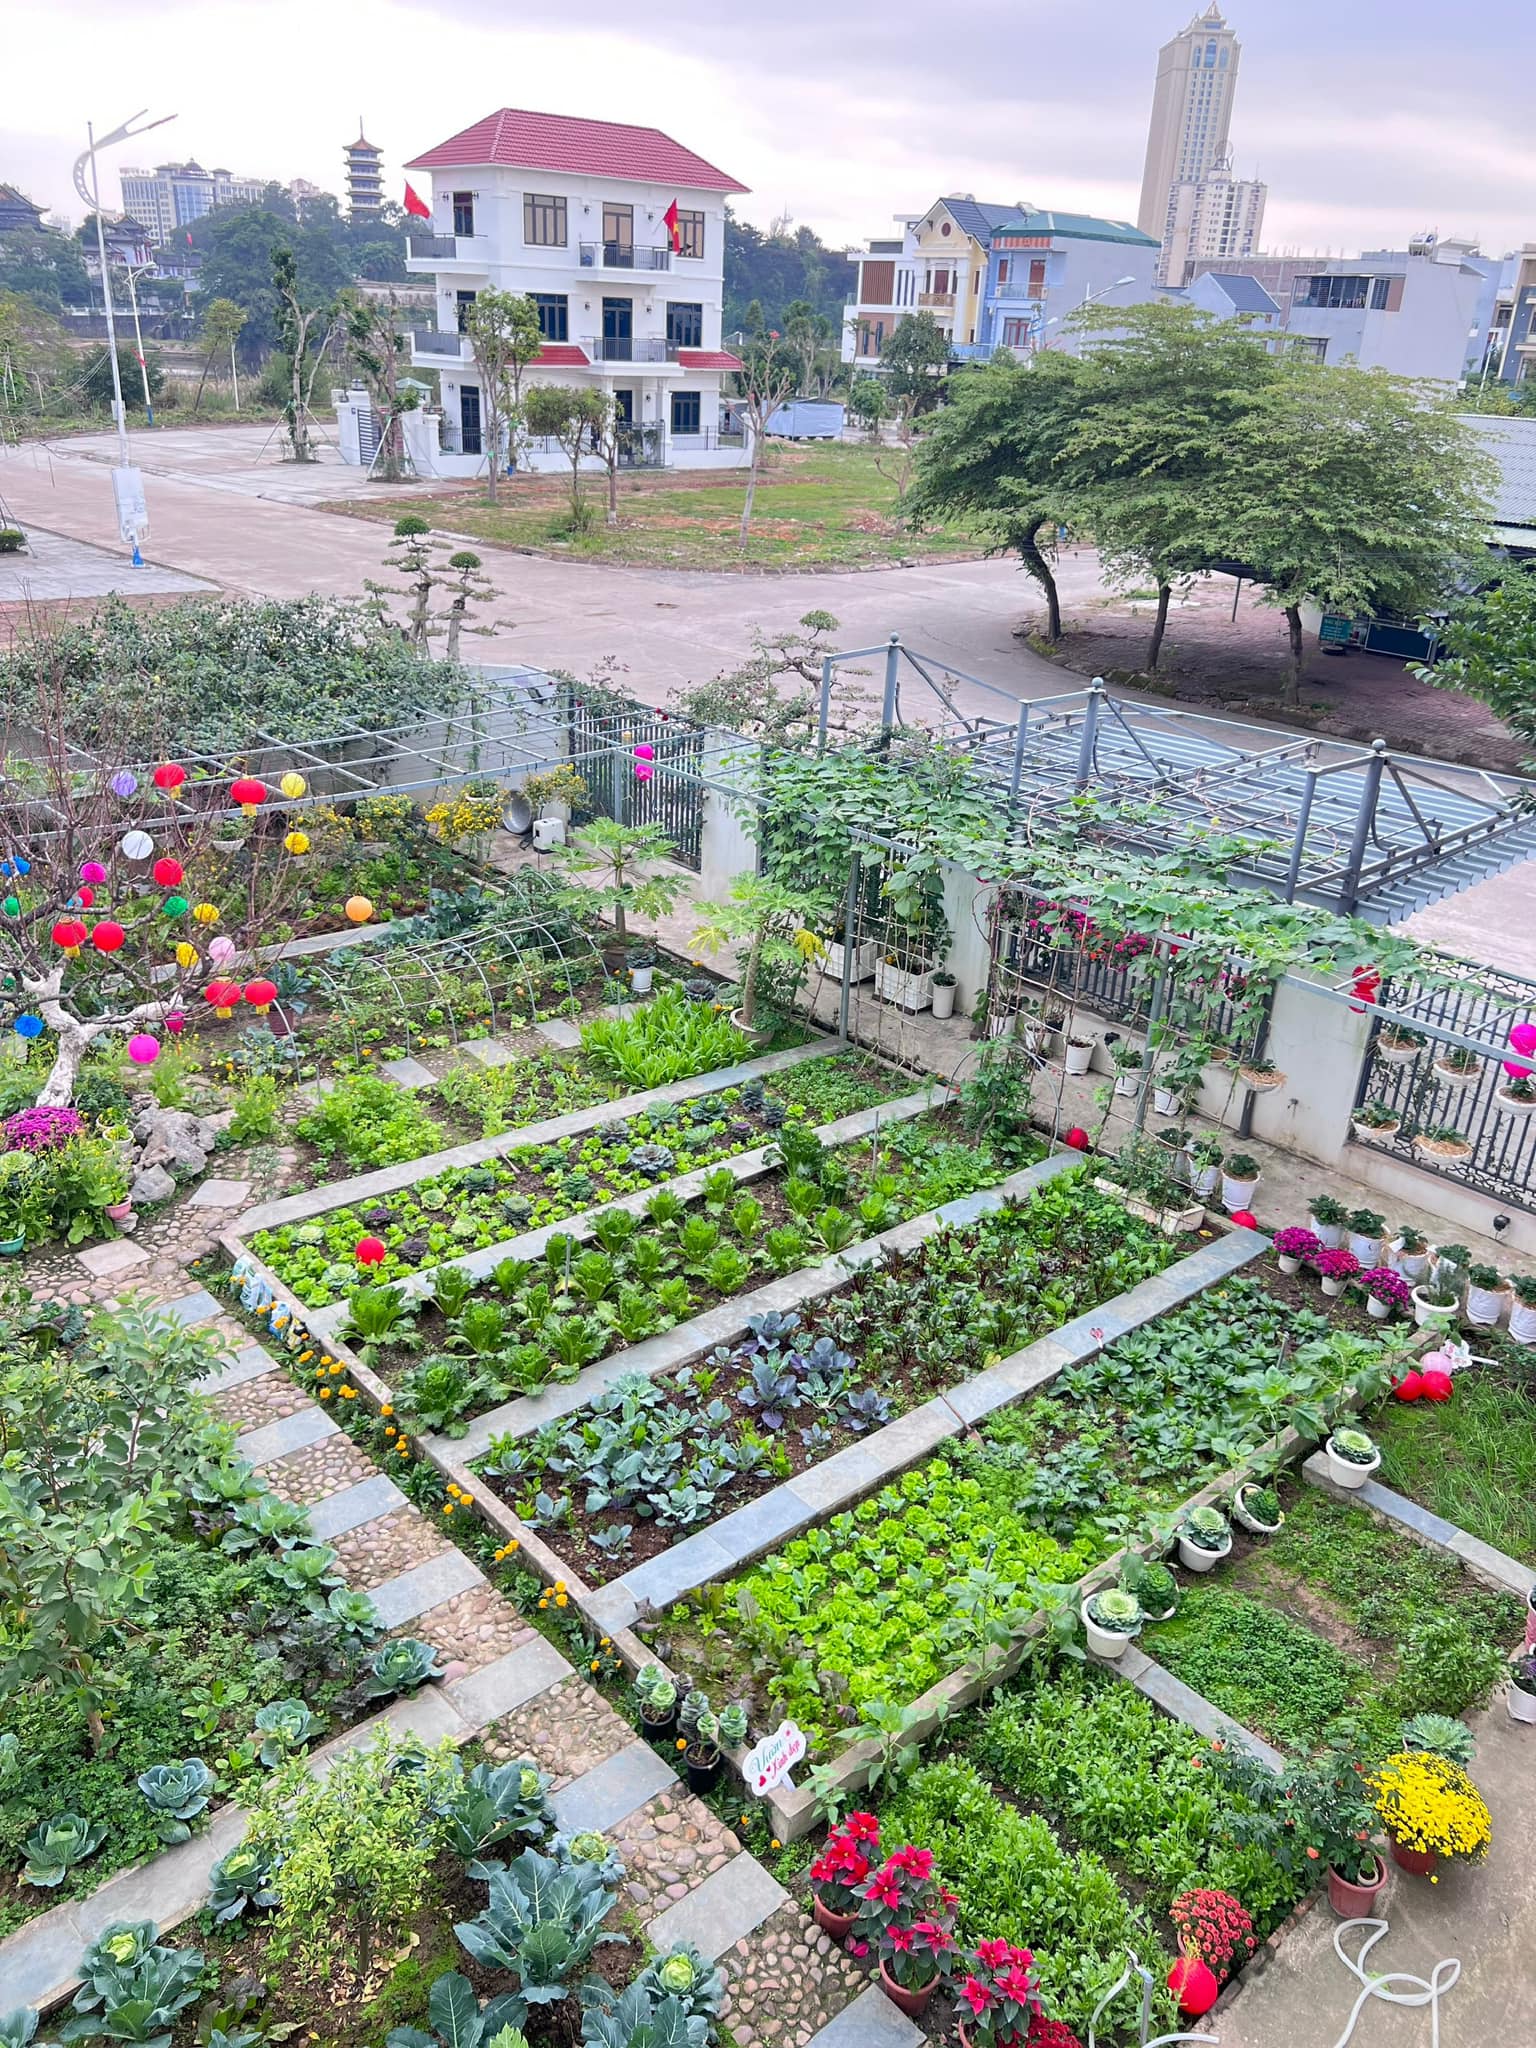 Khu vườn rộng 300m2 sum suê rau trái, mùa nào thức nấy, tươi tốt um tùm của mẹ đảm 4 con ở Quảng Ninh- Ảnh 2.